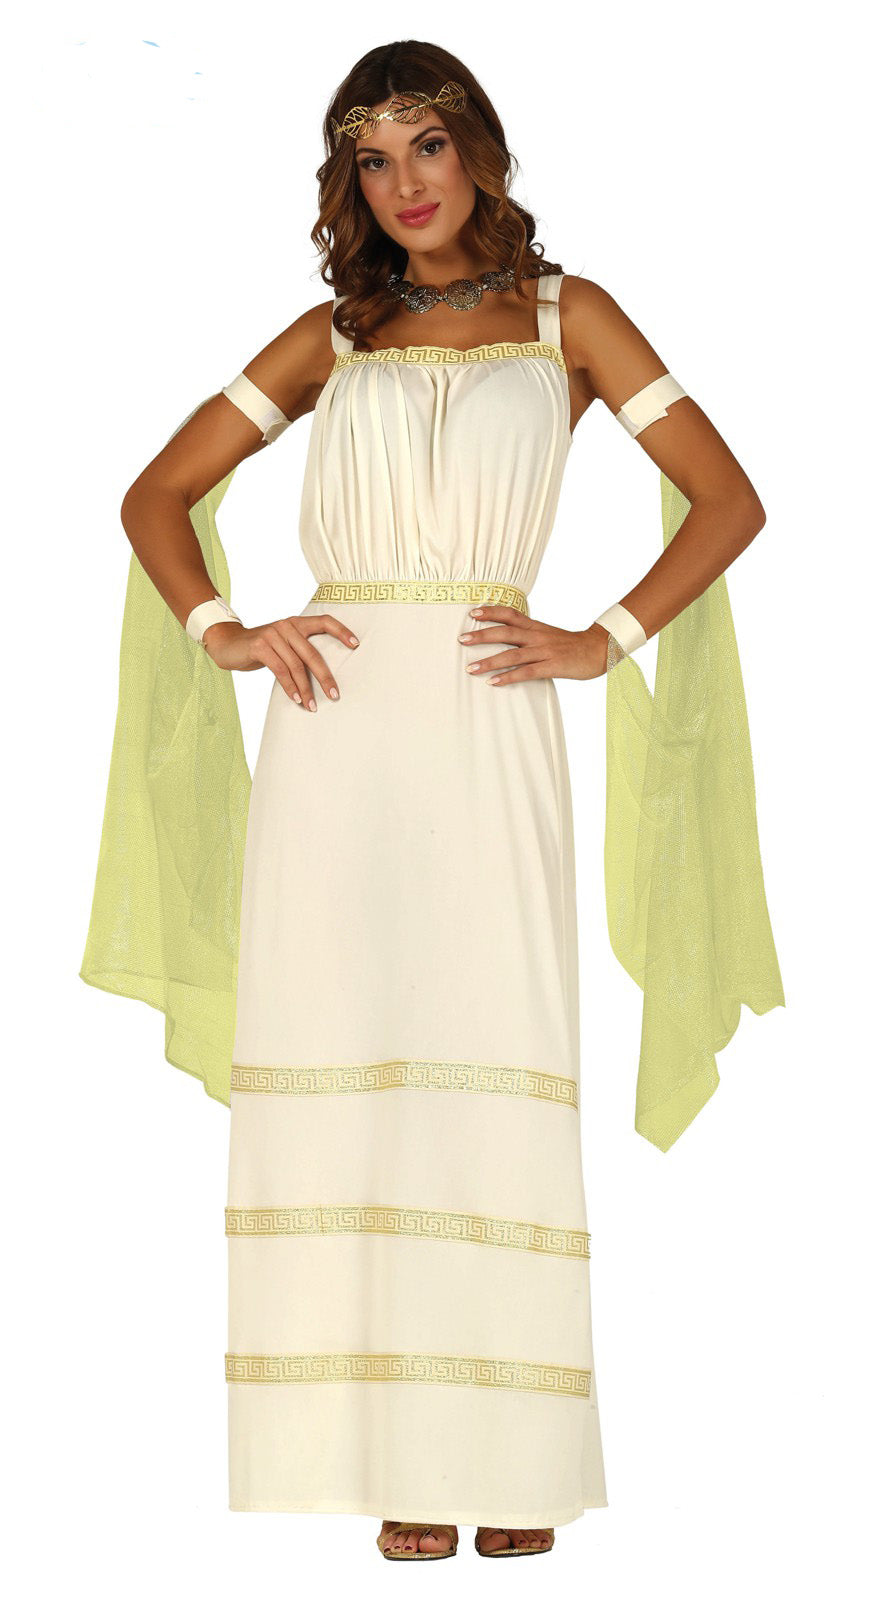 Golden Greek Goddess fancy dress costume for women.